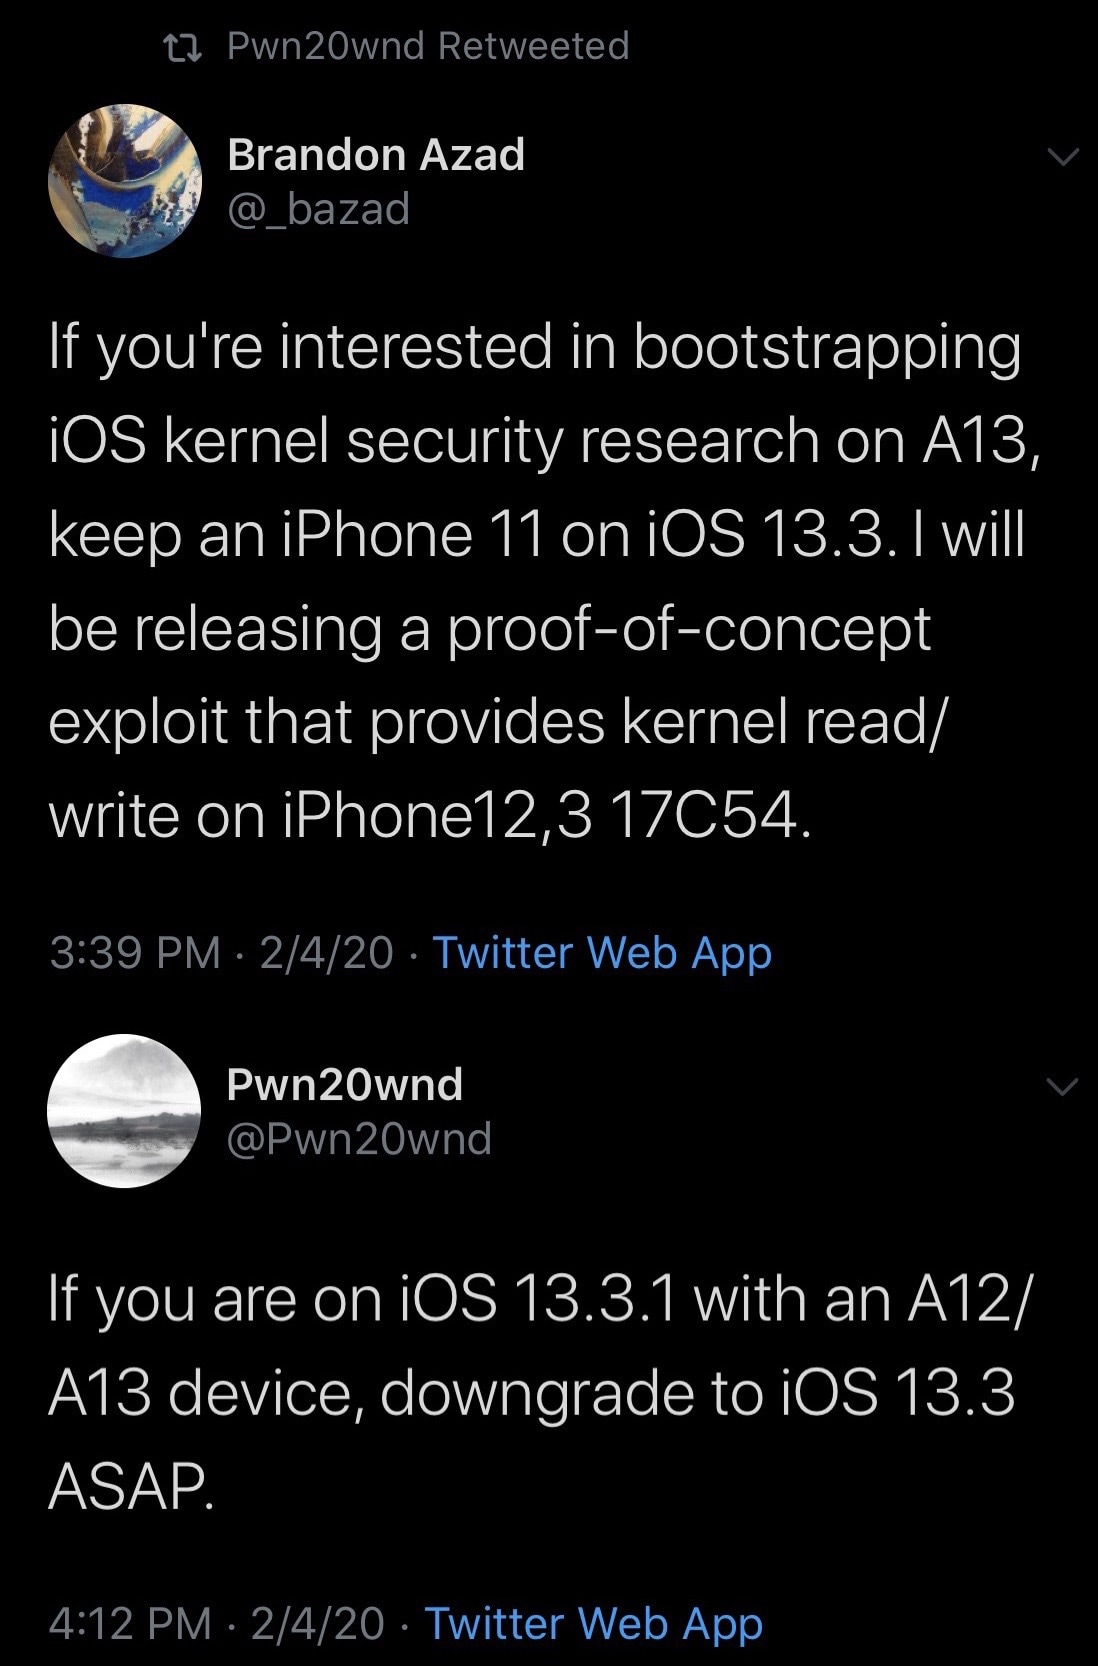 Brandon Azad berencana meluncurkan eksploit baru untuk iPhone 11 di iOS 13.3 3